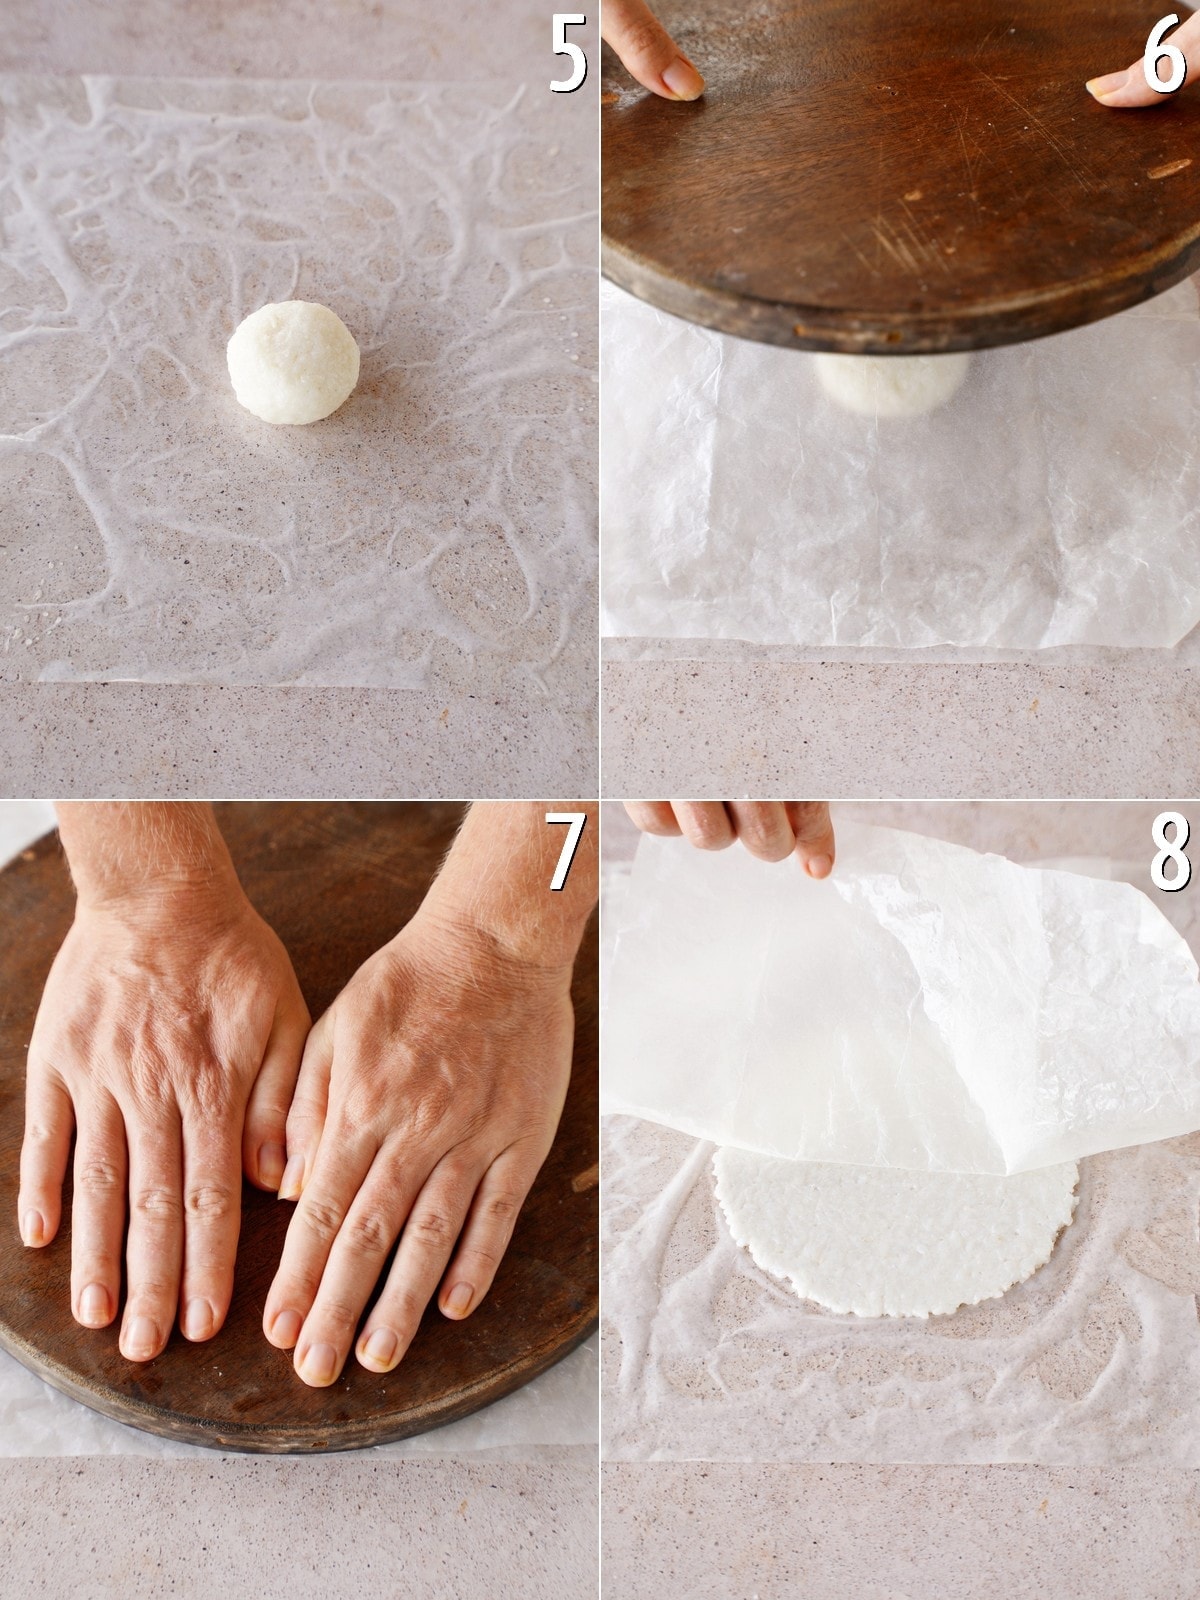 4 Fotos, die Schritt für Schritt zeigen, wie man einen Reisball presst